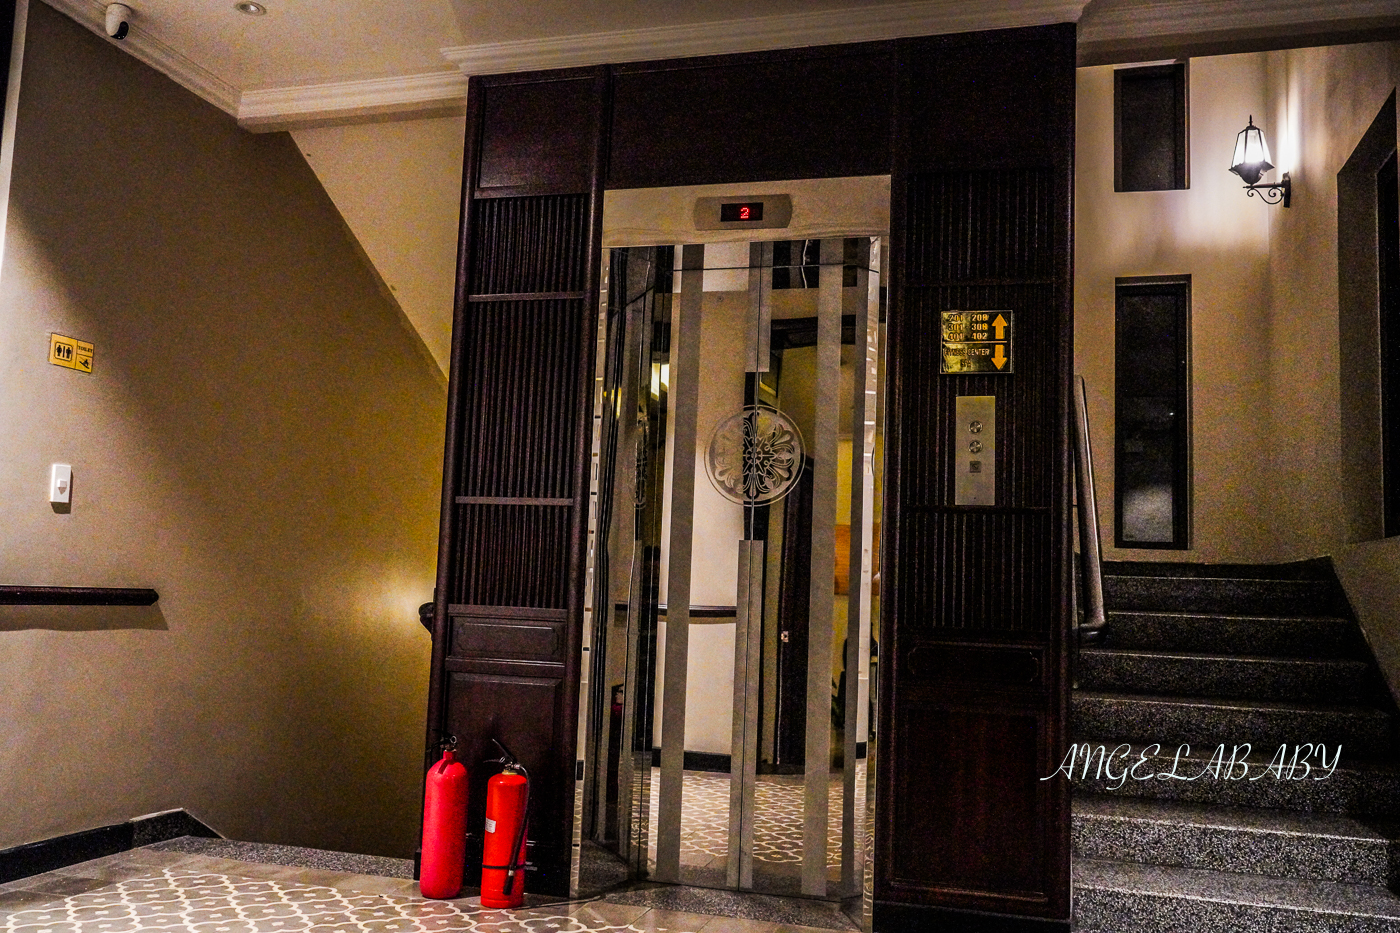 會安超值度假河景飯店『Laluna Hoi An Riverside Hotel &#038; Spa』訂房優惠、古城區走路9分鐘 @梅格(Angelababy)享樂日記